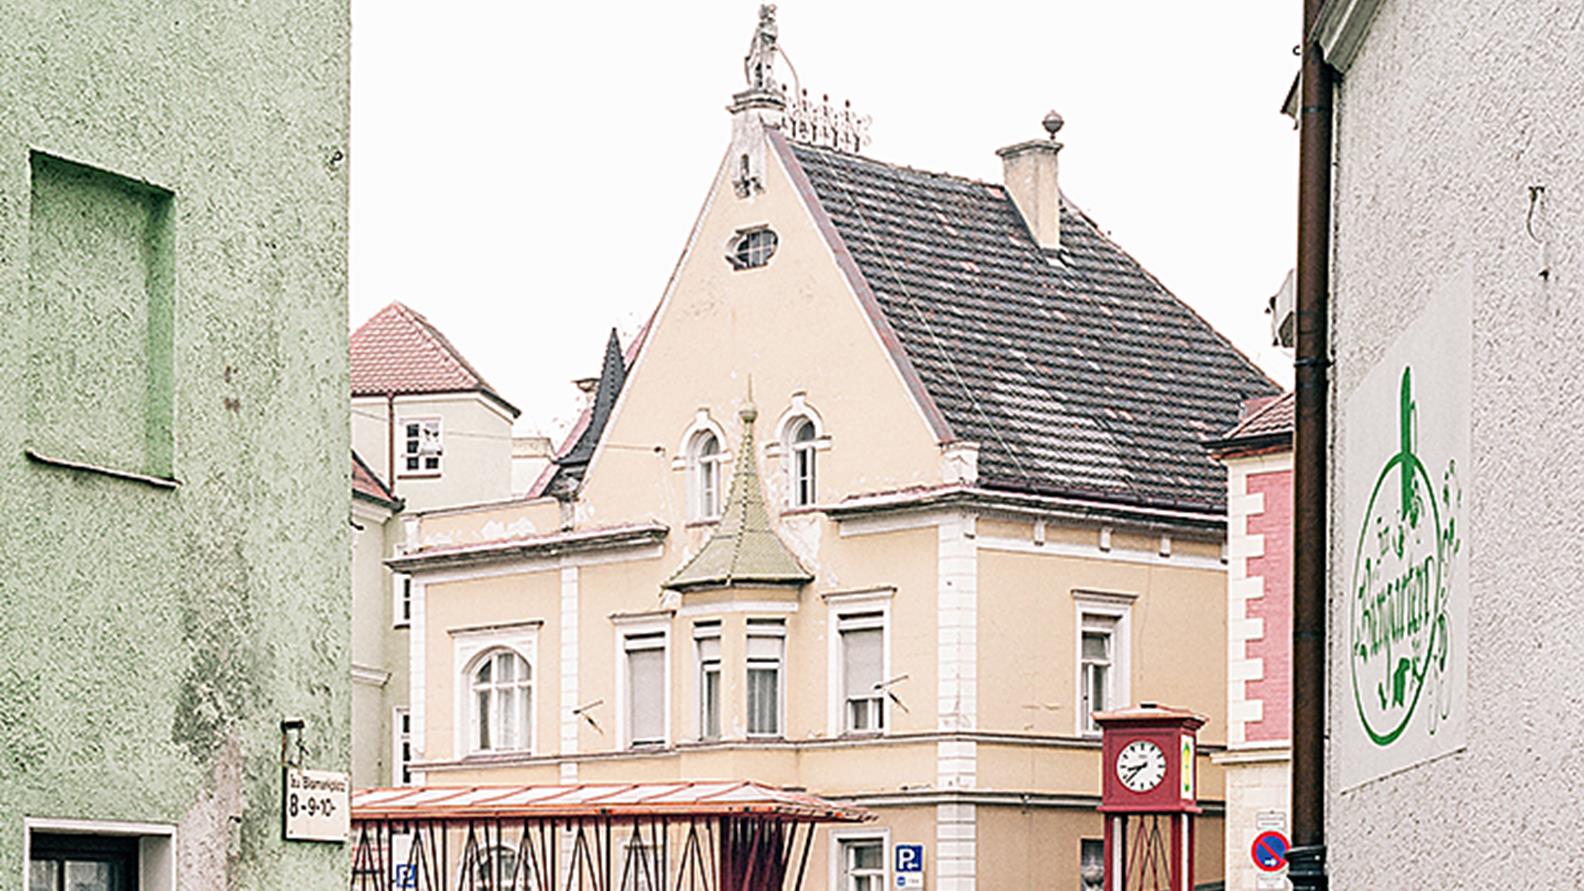 Zitzelsberger_Wartehaus